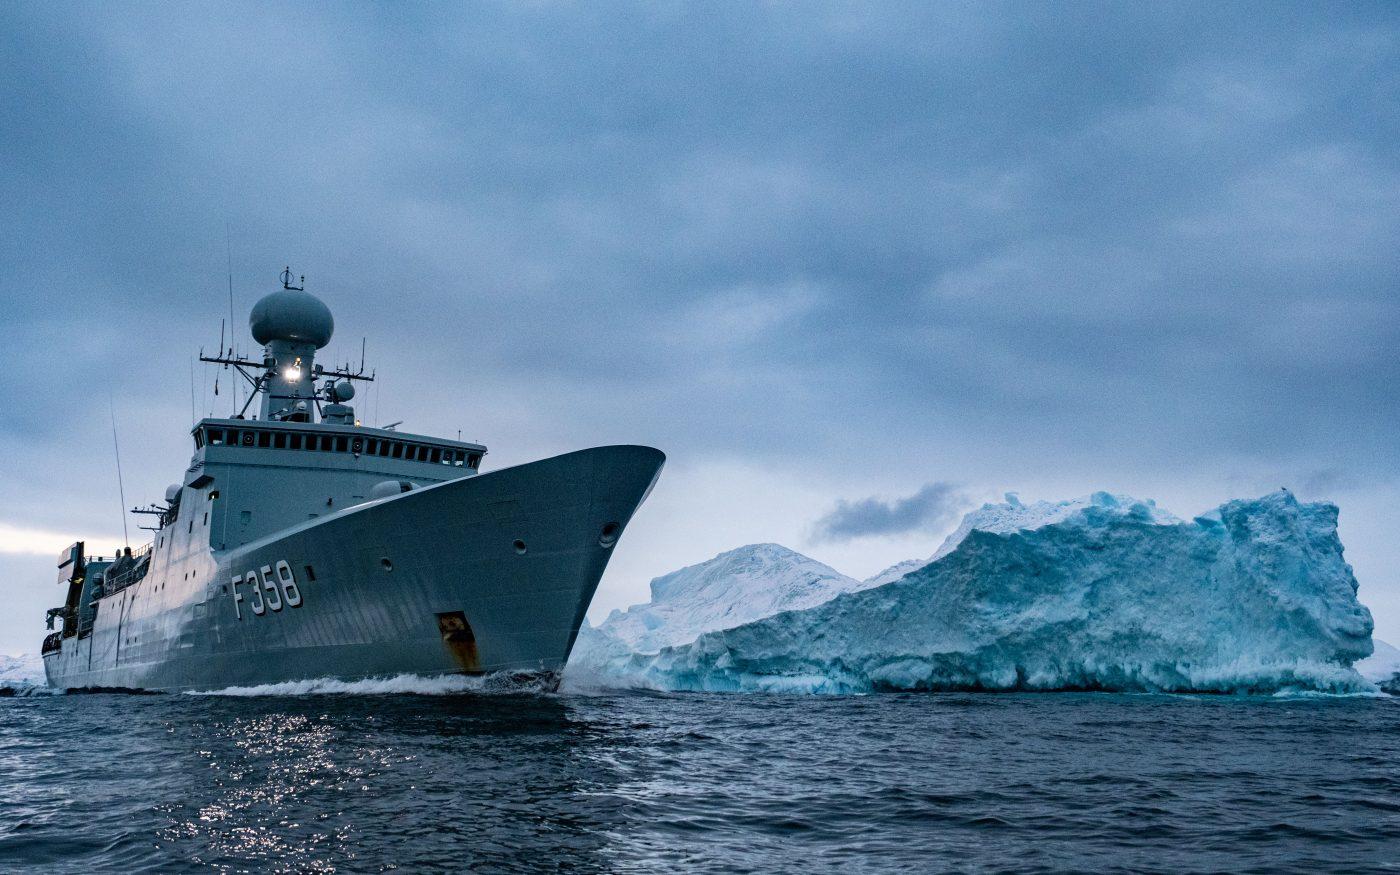 La frégate HDMS Triton, de la marine royale danoise, fait partie du Commandement interarmées de l’Arctique des forces armées danoises. Ce commandement chargé de contrôler le secteur de la pêche, de mener des opérations de recherche et sauvetage et d’assurer la surveillance de l’environnement contribue à la sécurité et à la défense du Grand Nord. © OTAN
)